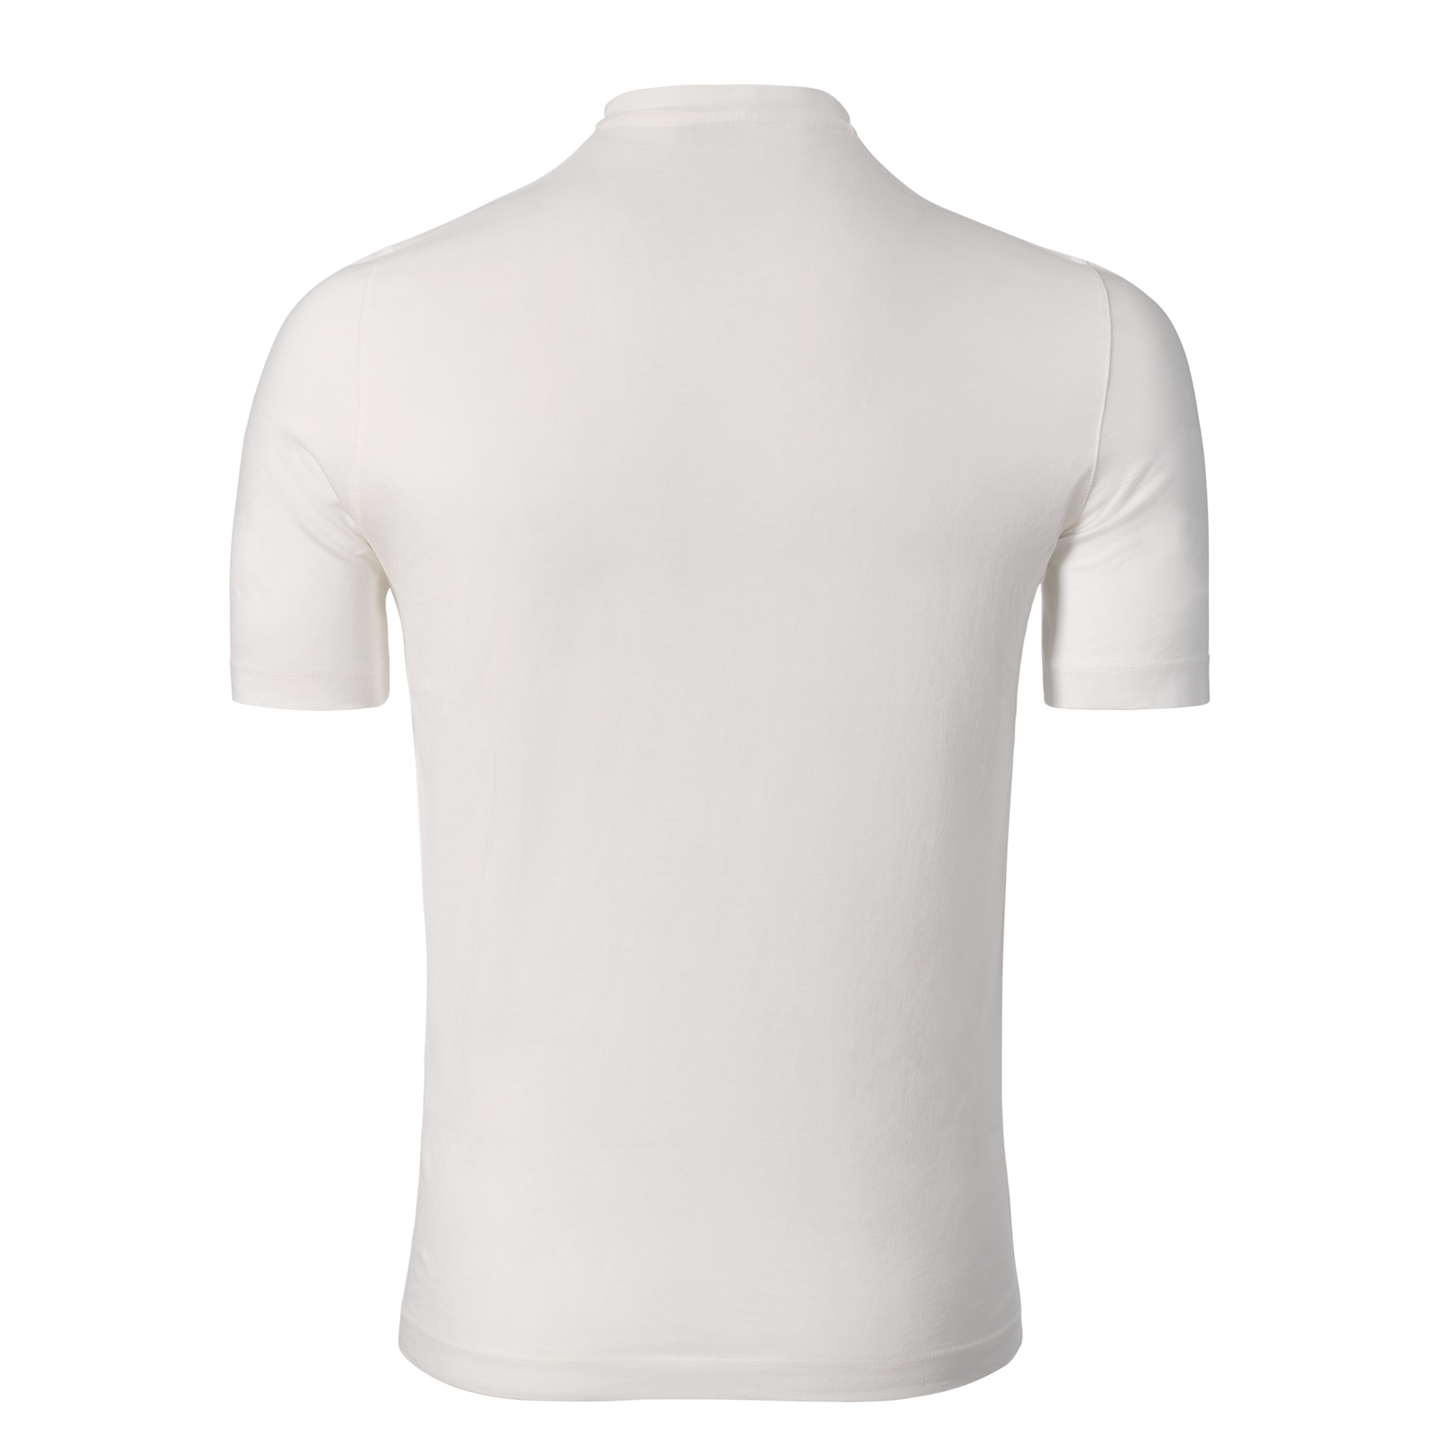 Jersey-Baumwoll-T-Shirt in Weiß